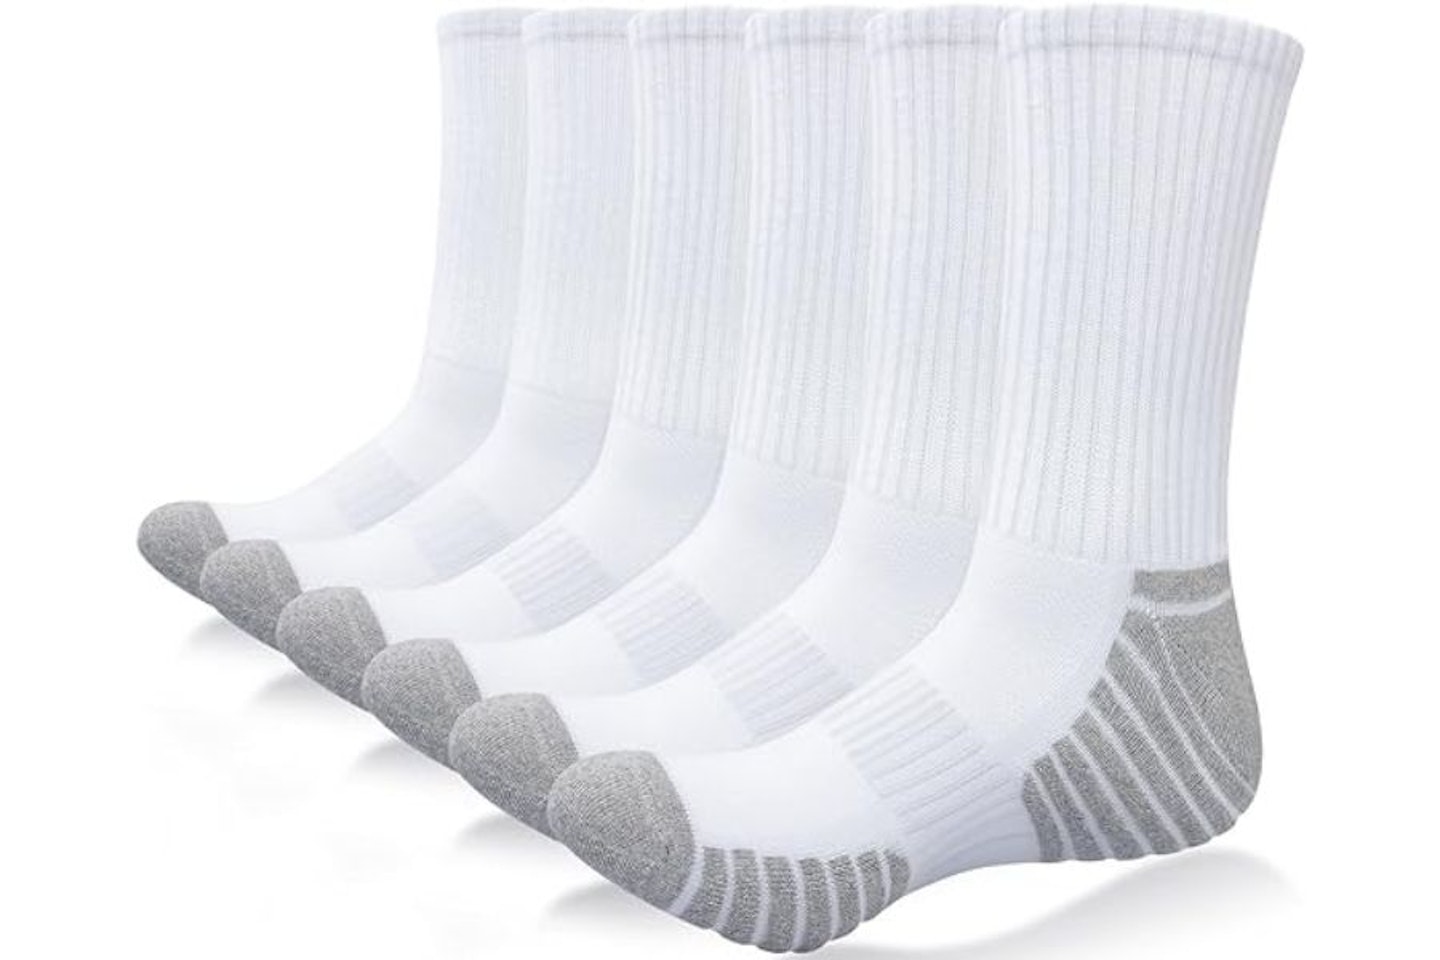 Alaplus Socks